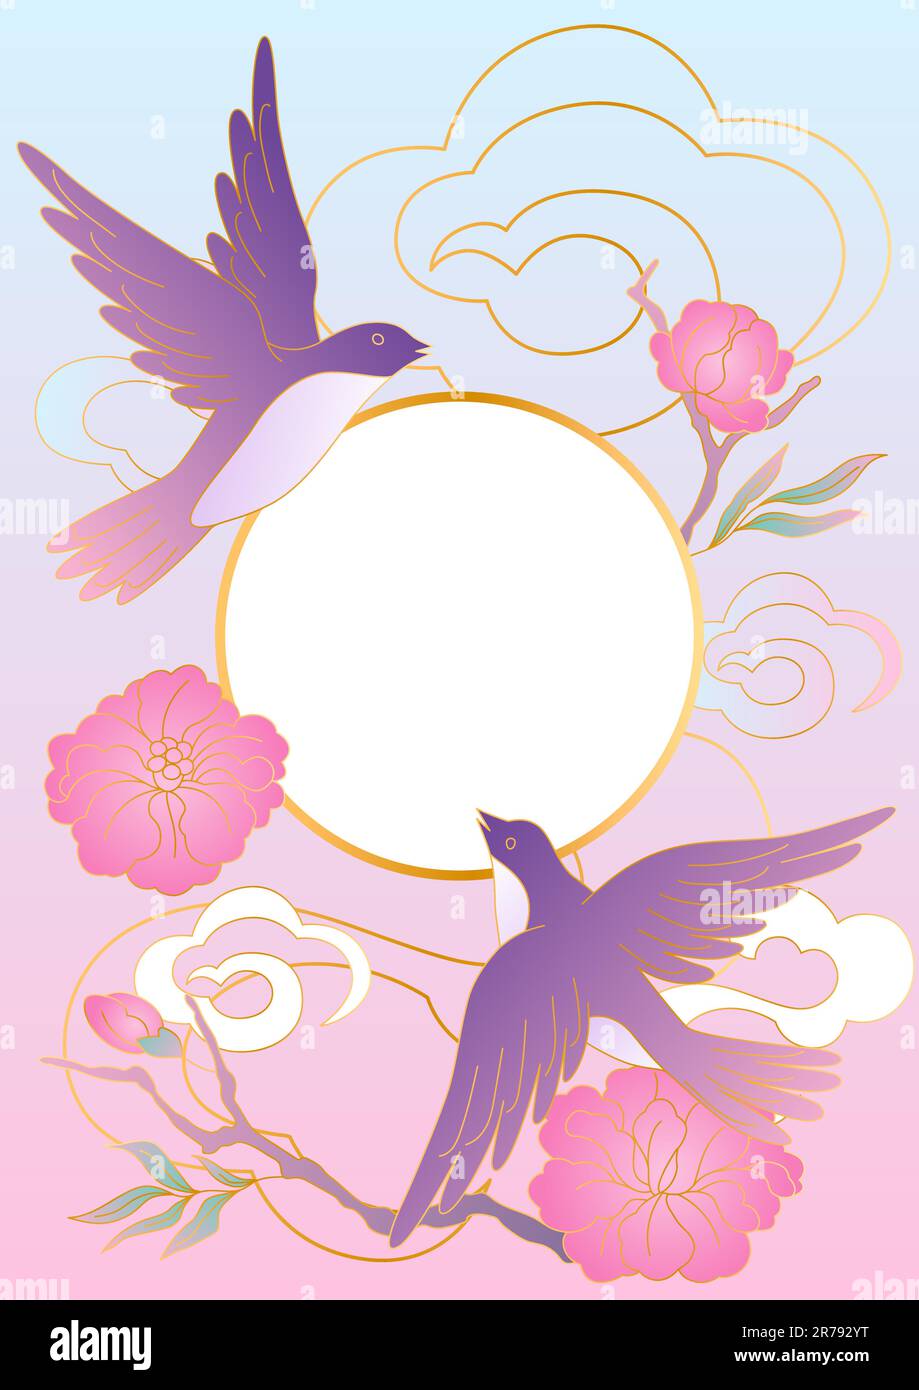 Orientalische Vögel und Blumen Illustration. Traditioneller chinesischer und japanischer Hintergrund. Stock Vektor